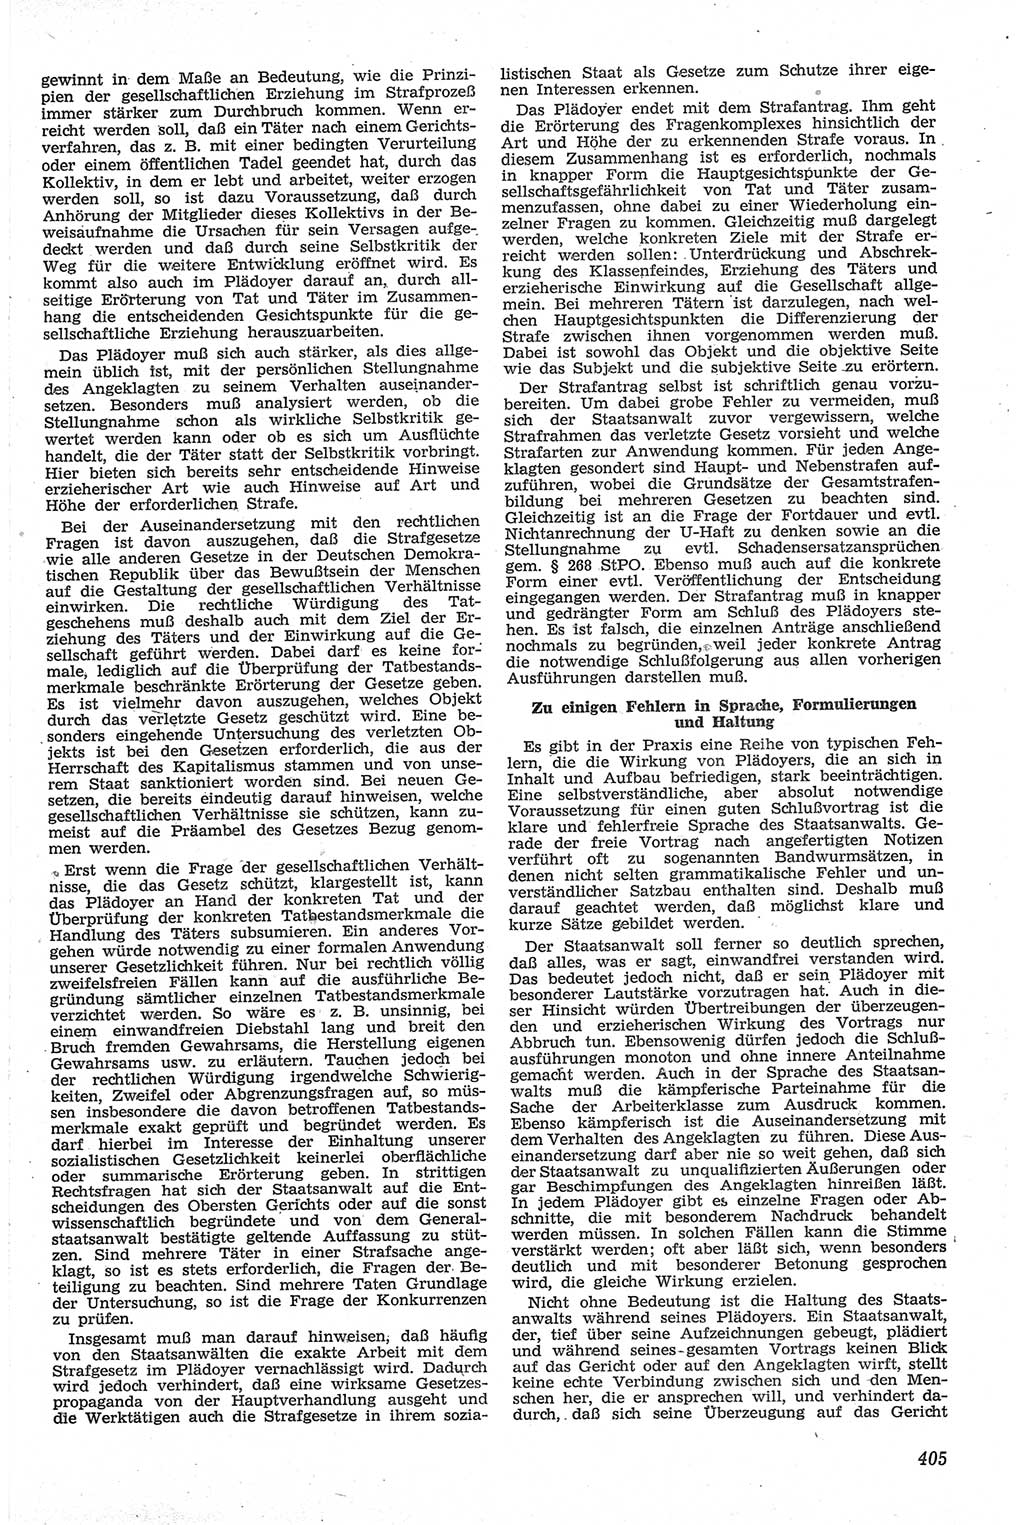 Neue Justiz (NJ), Zeitschrift für Recht und Rechtswissenschaft [Deutsche Demokratische Republik (DDR)], 13. Jahrgang 1959, Seite 405 (NJ DDR 1959, S. 405)